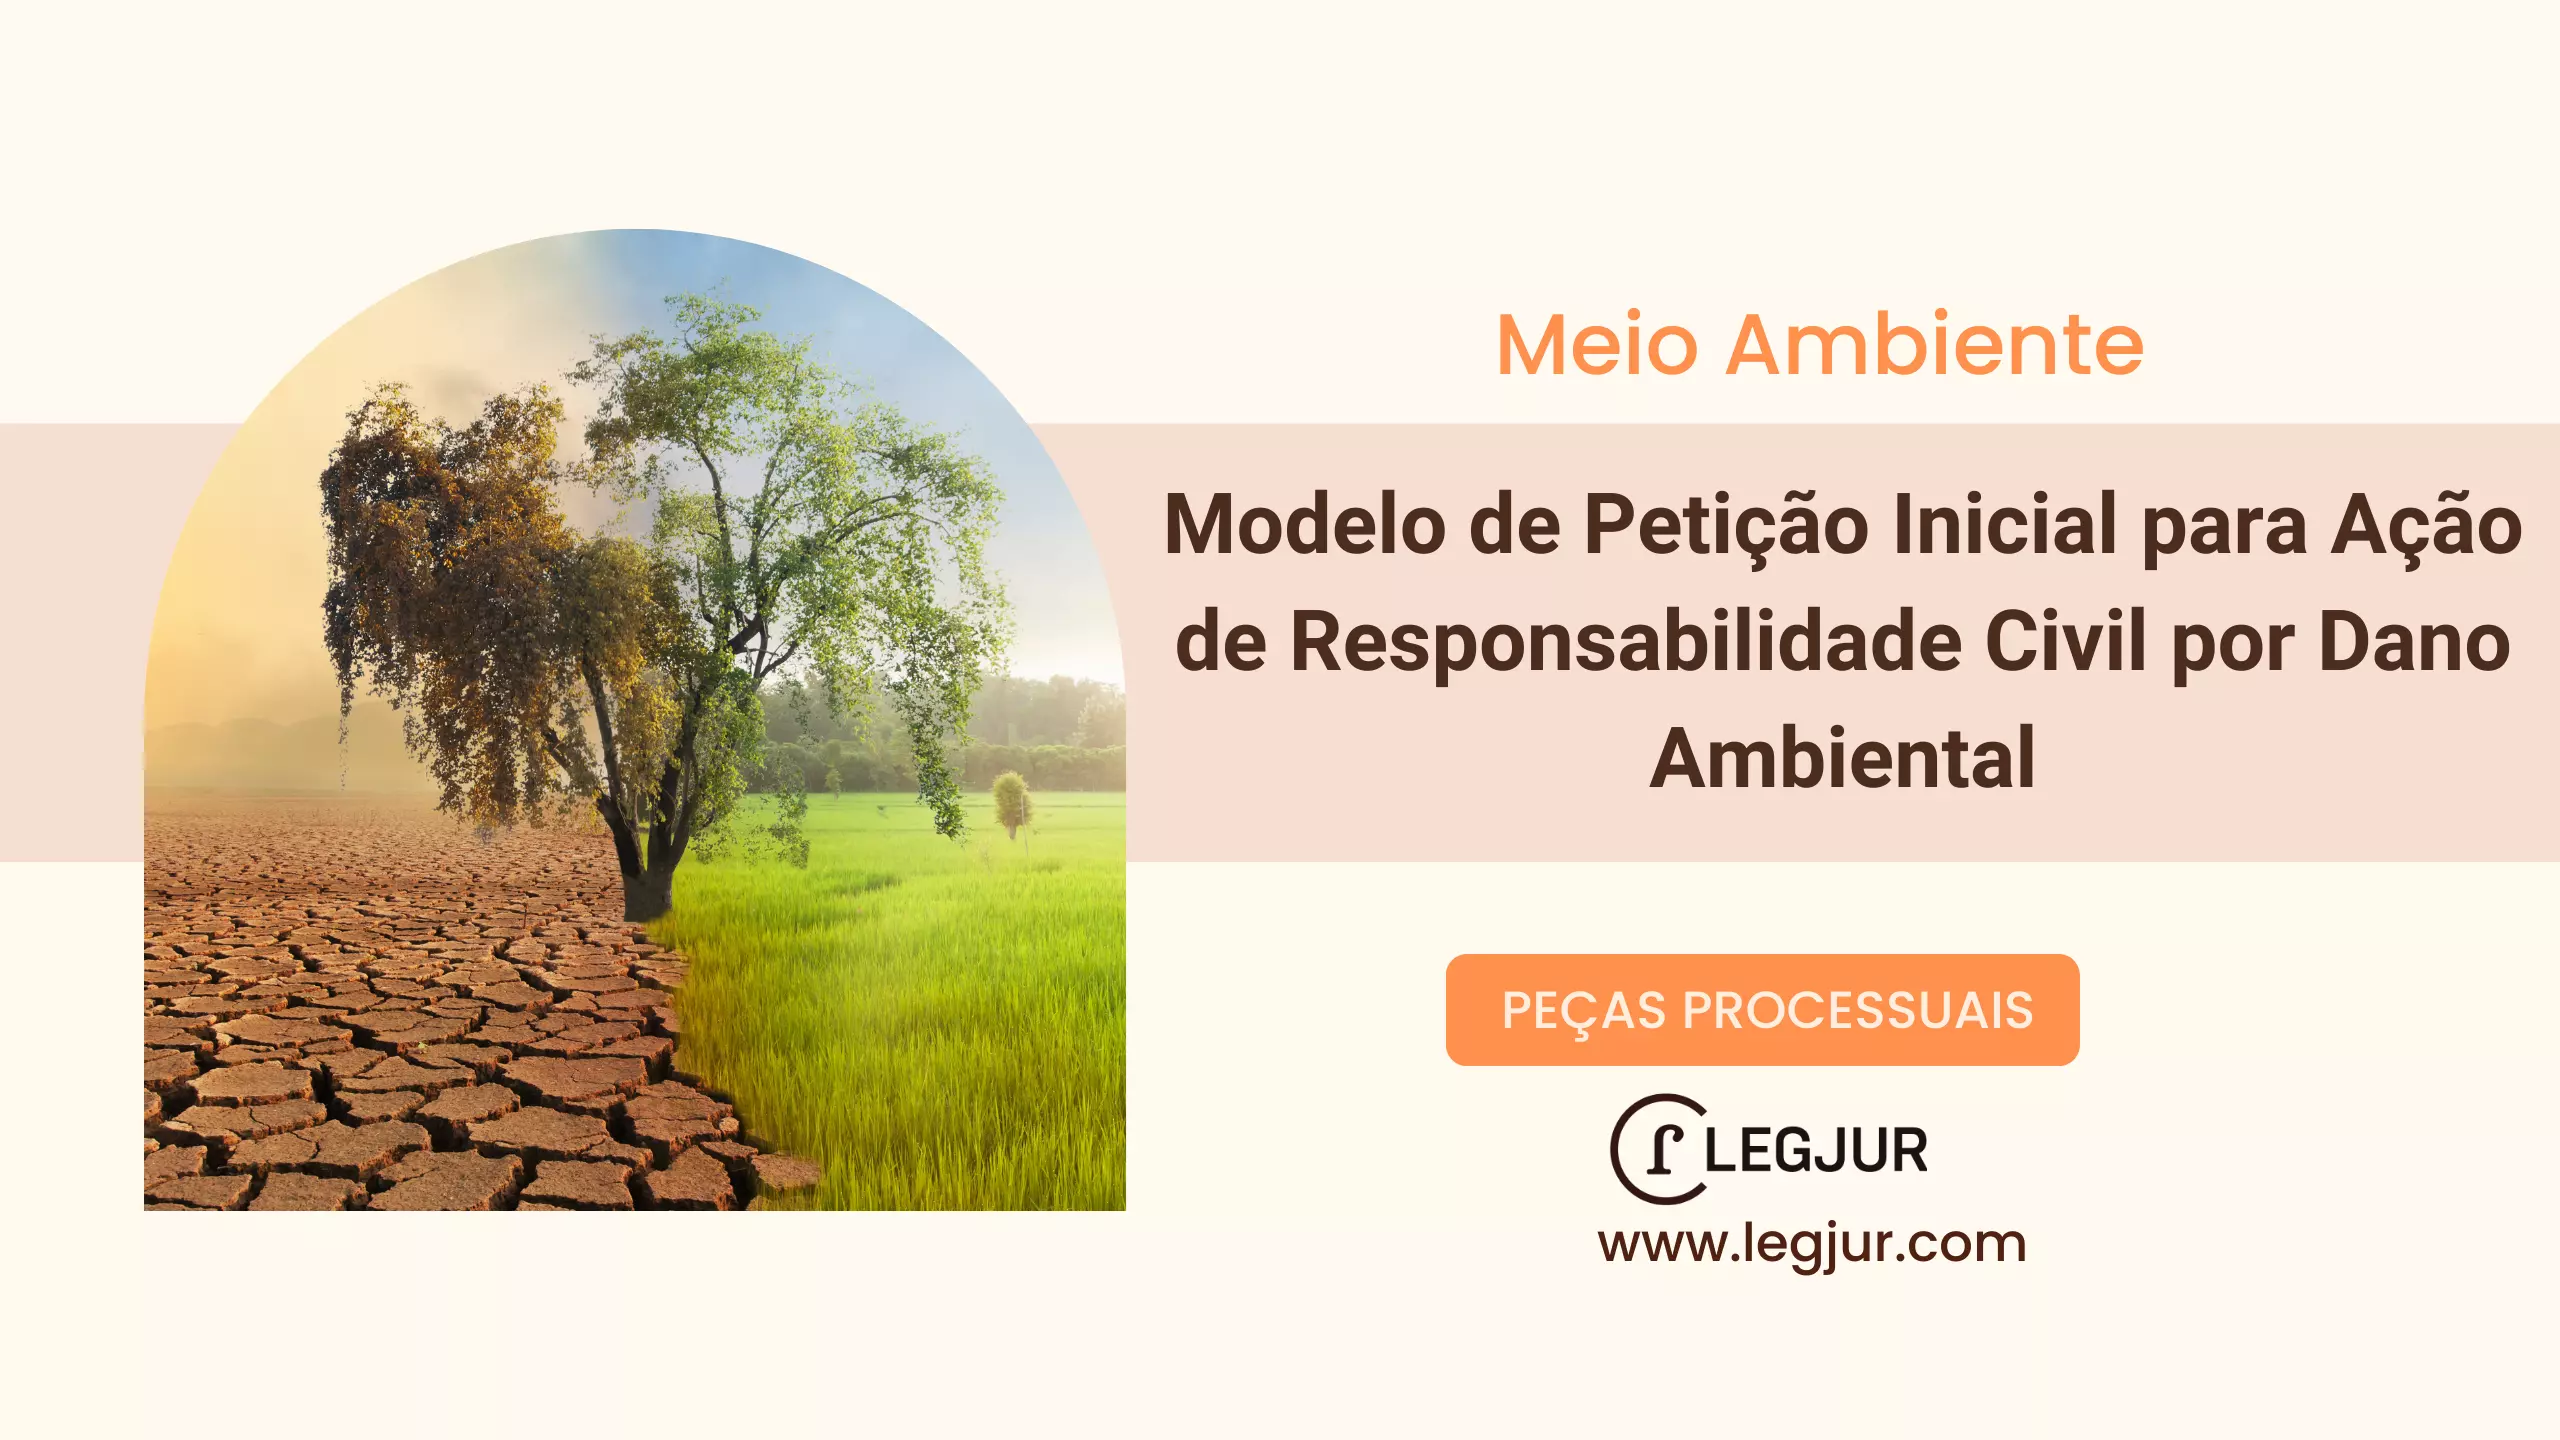 Modelo de Petição Inicial para Ação de Responsabilidade Civil por Dano Ambiental